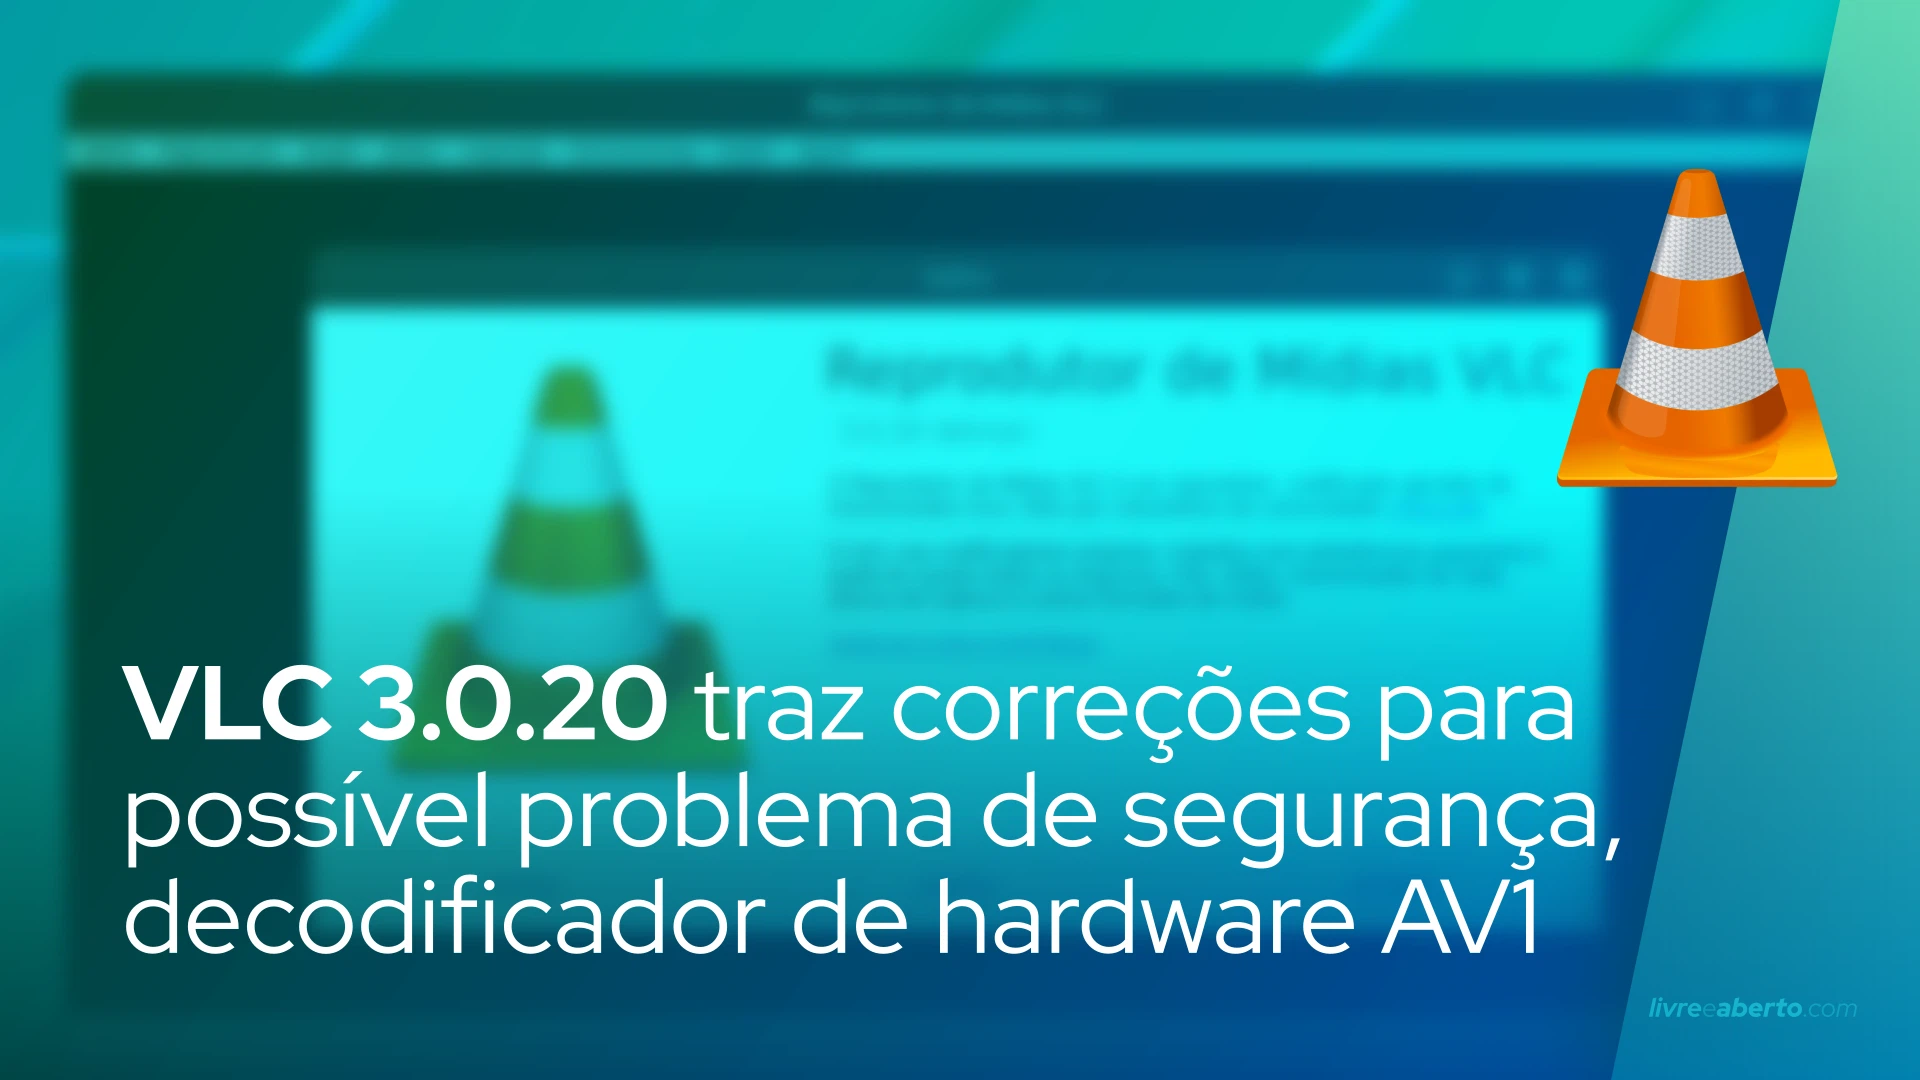 VLC 3.0.20 traz correções para possível problema de segurança, decodificador de hardware AV1